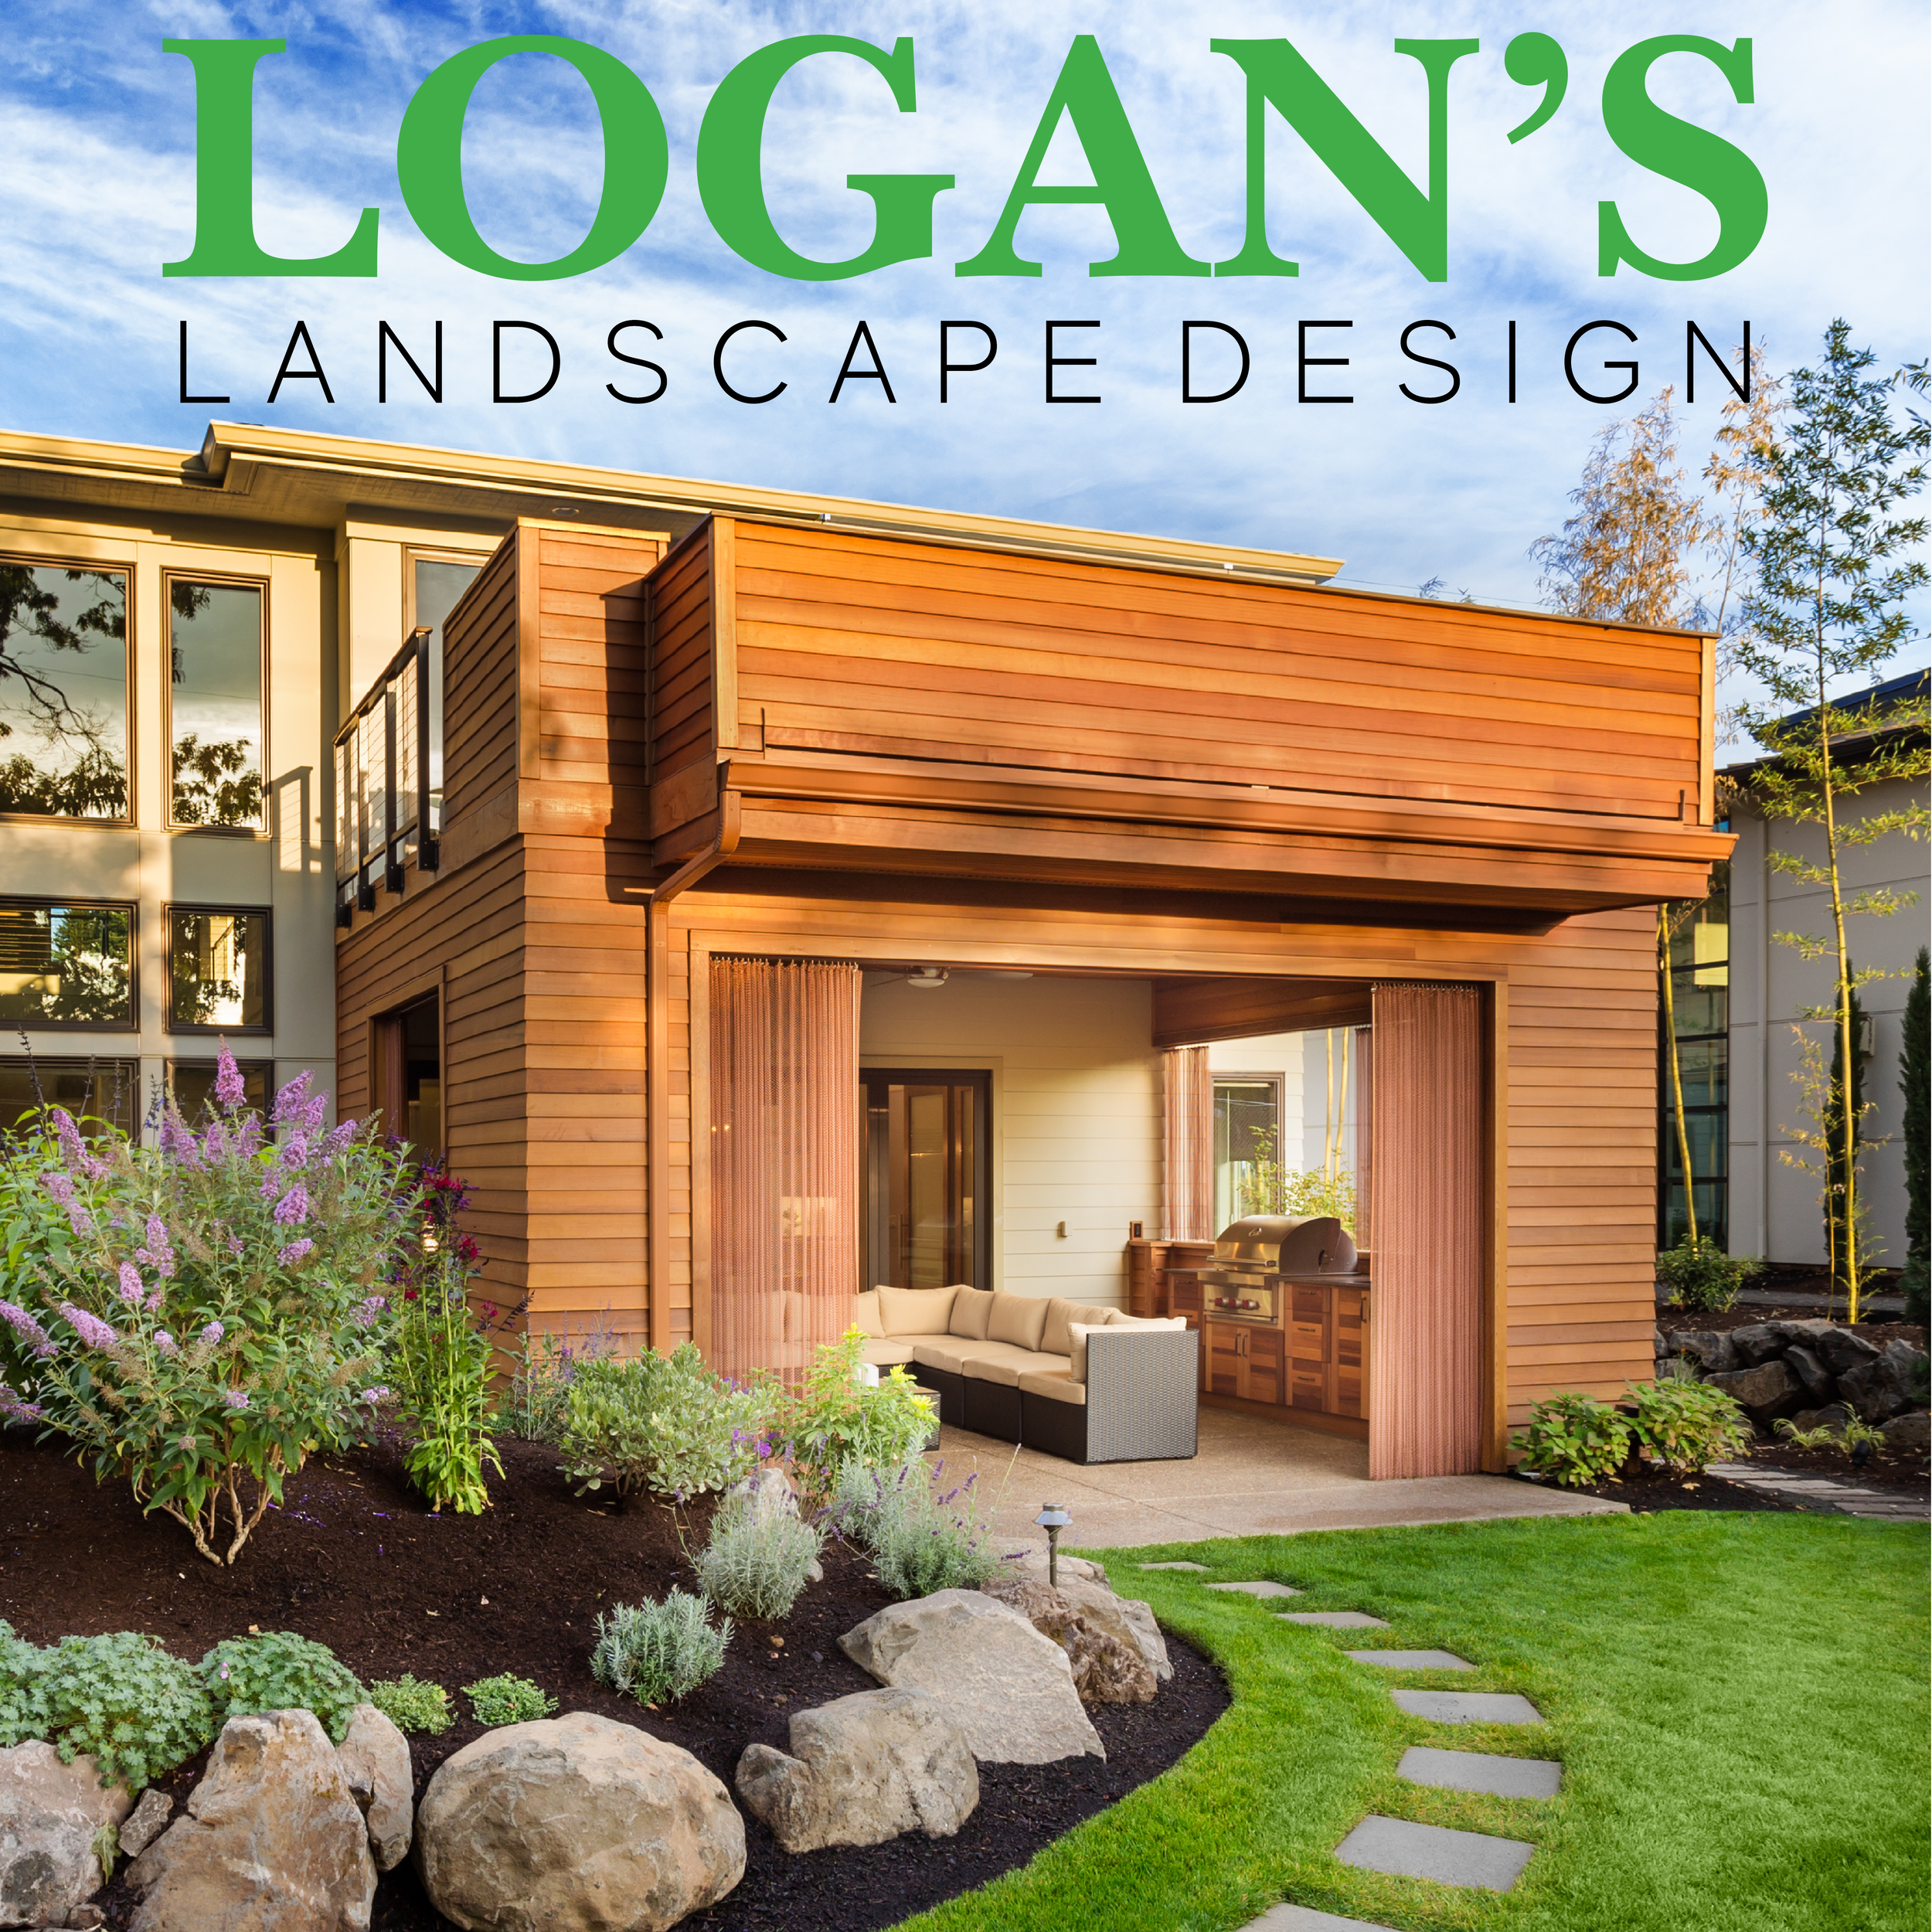 Landscape Services Logan S Garden Shop